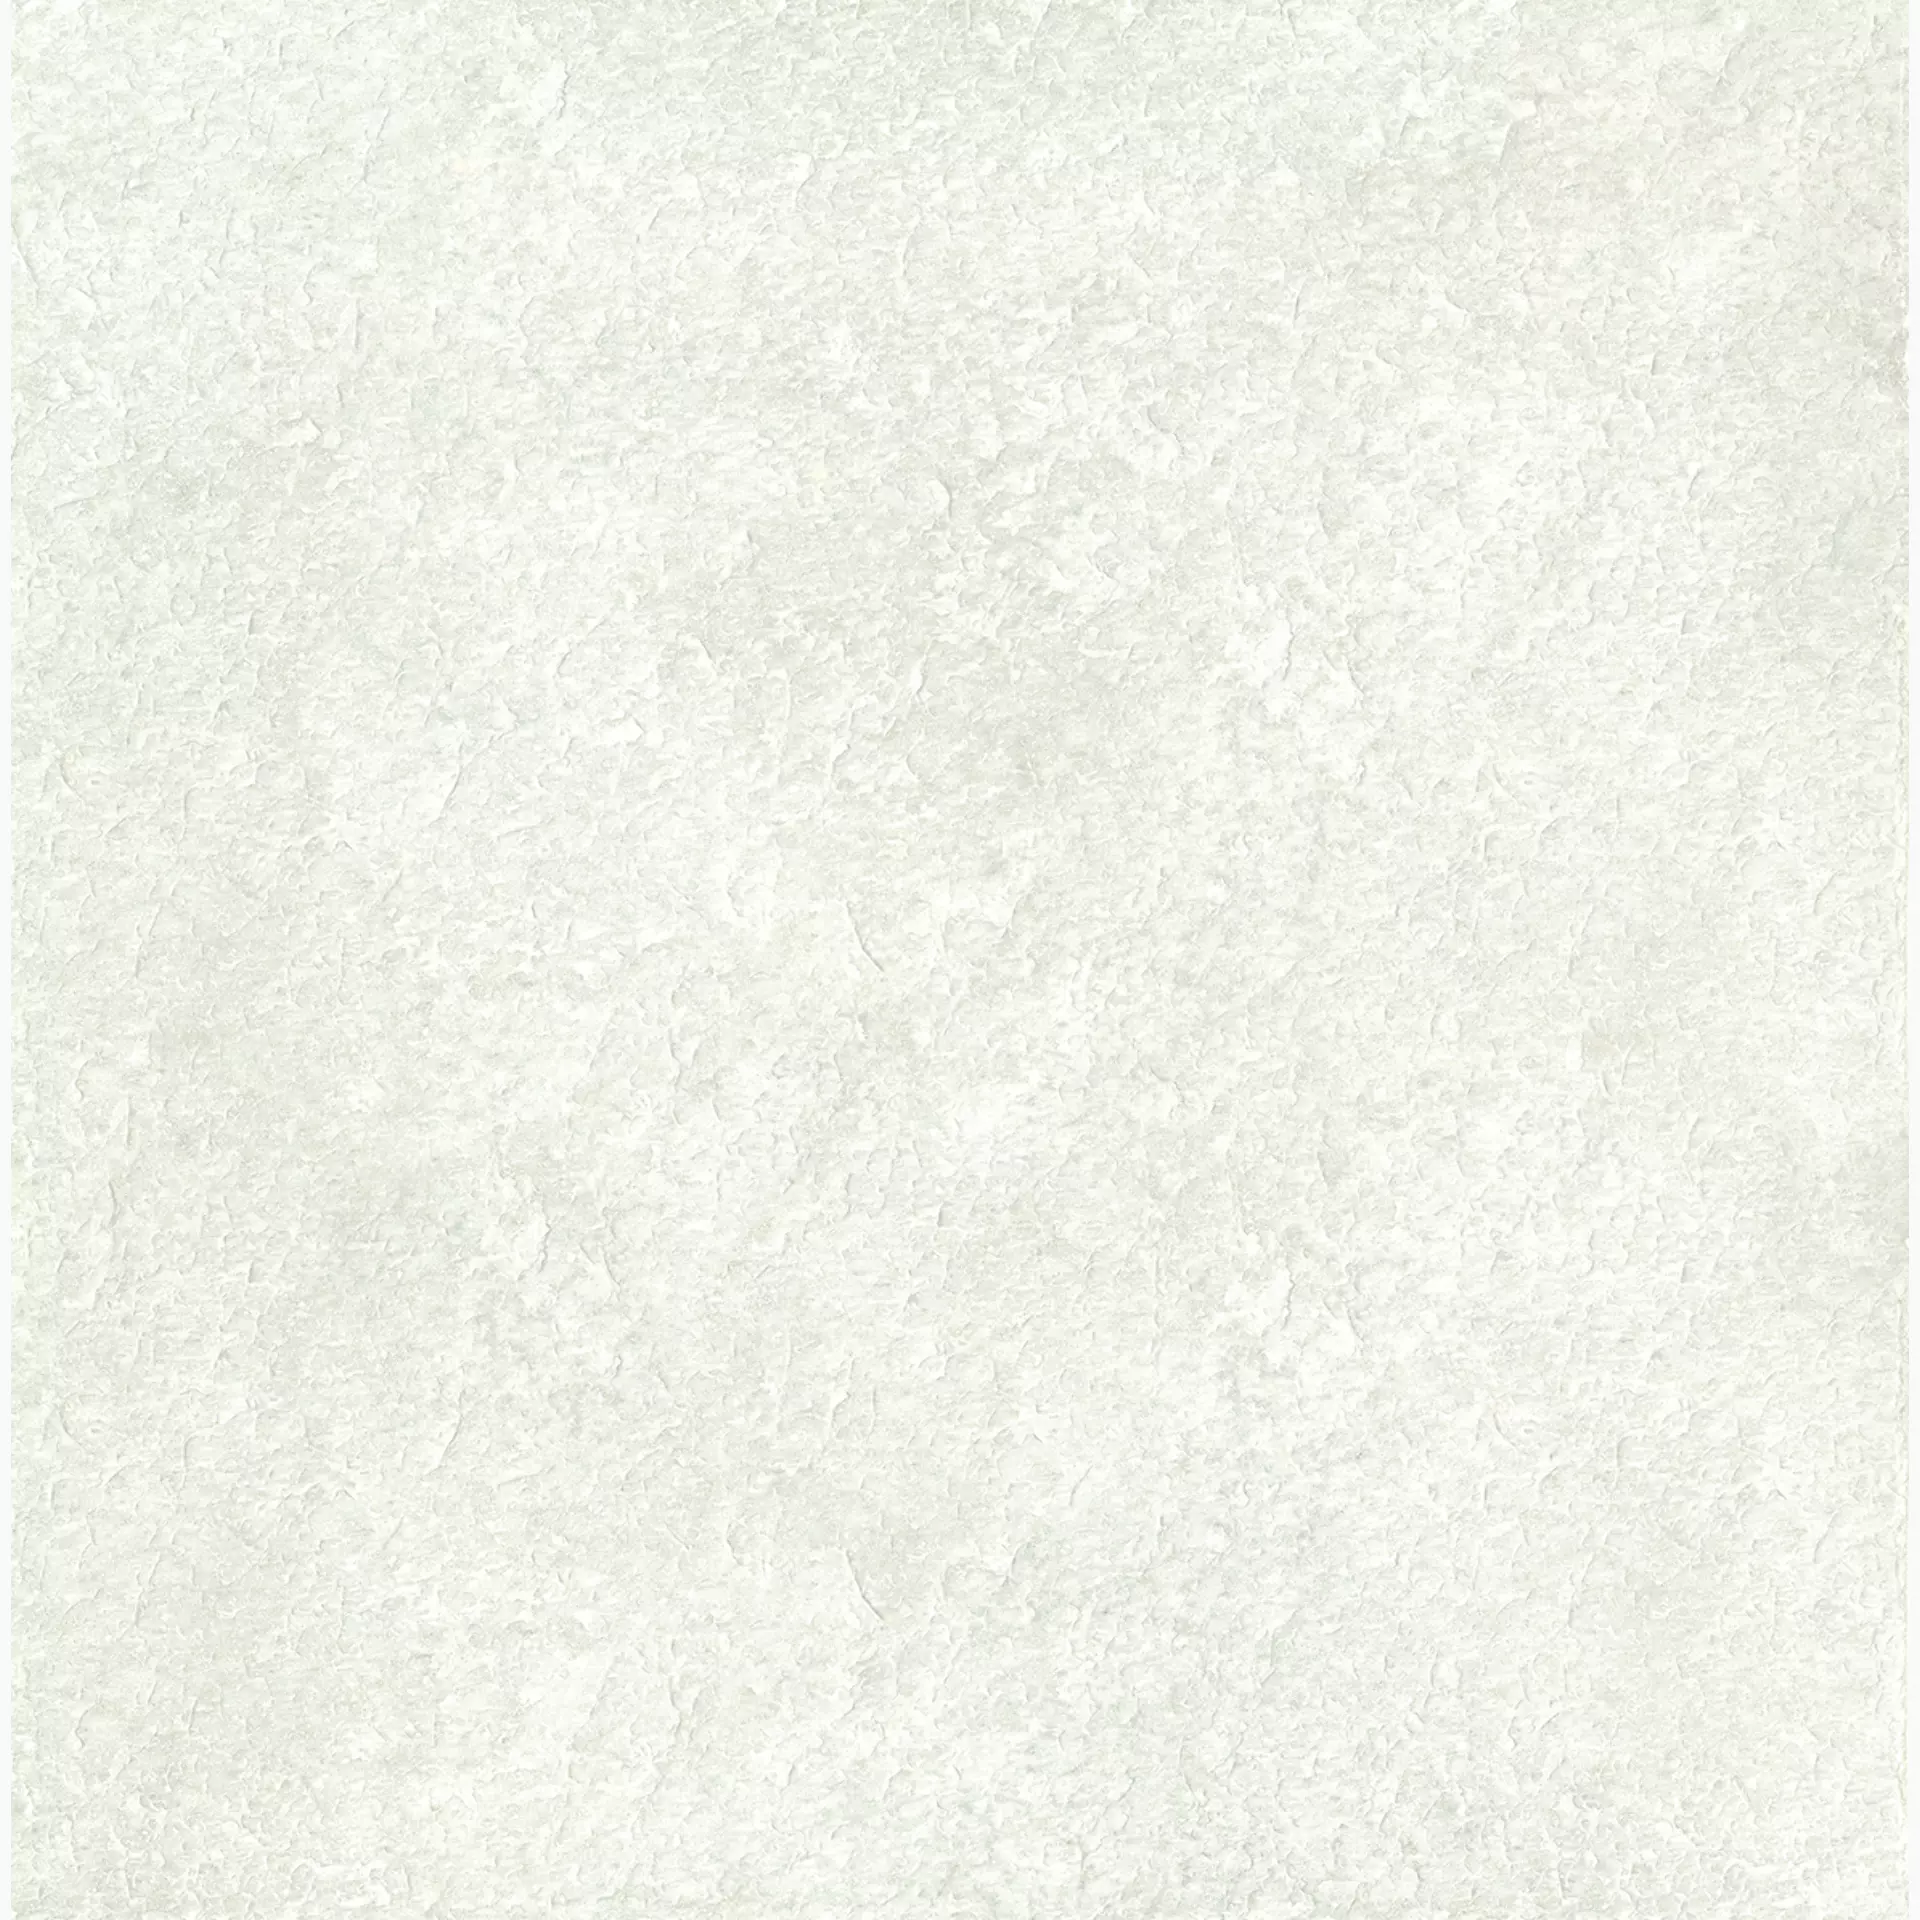 Ergon Oros Stone White Naturale EKL6 60x60cm rectified 9,5mm